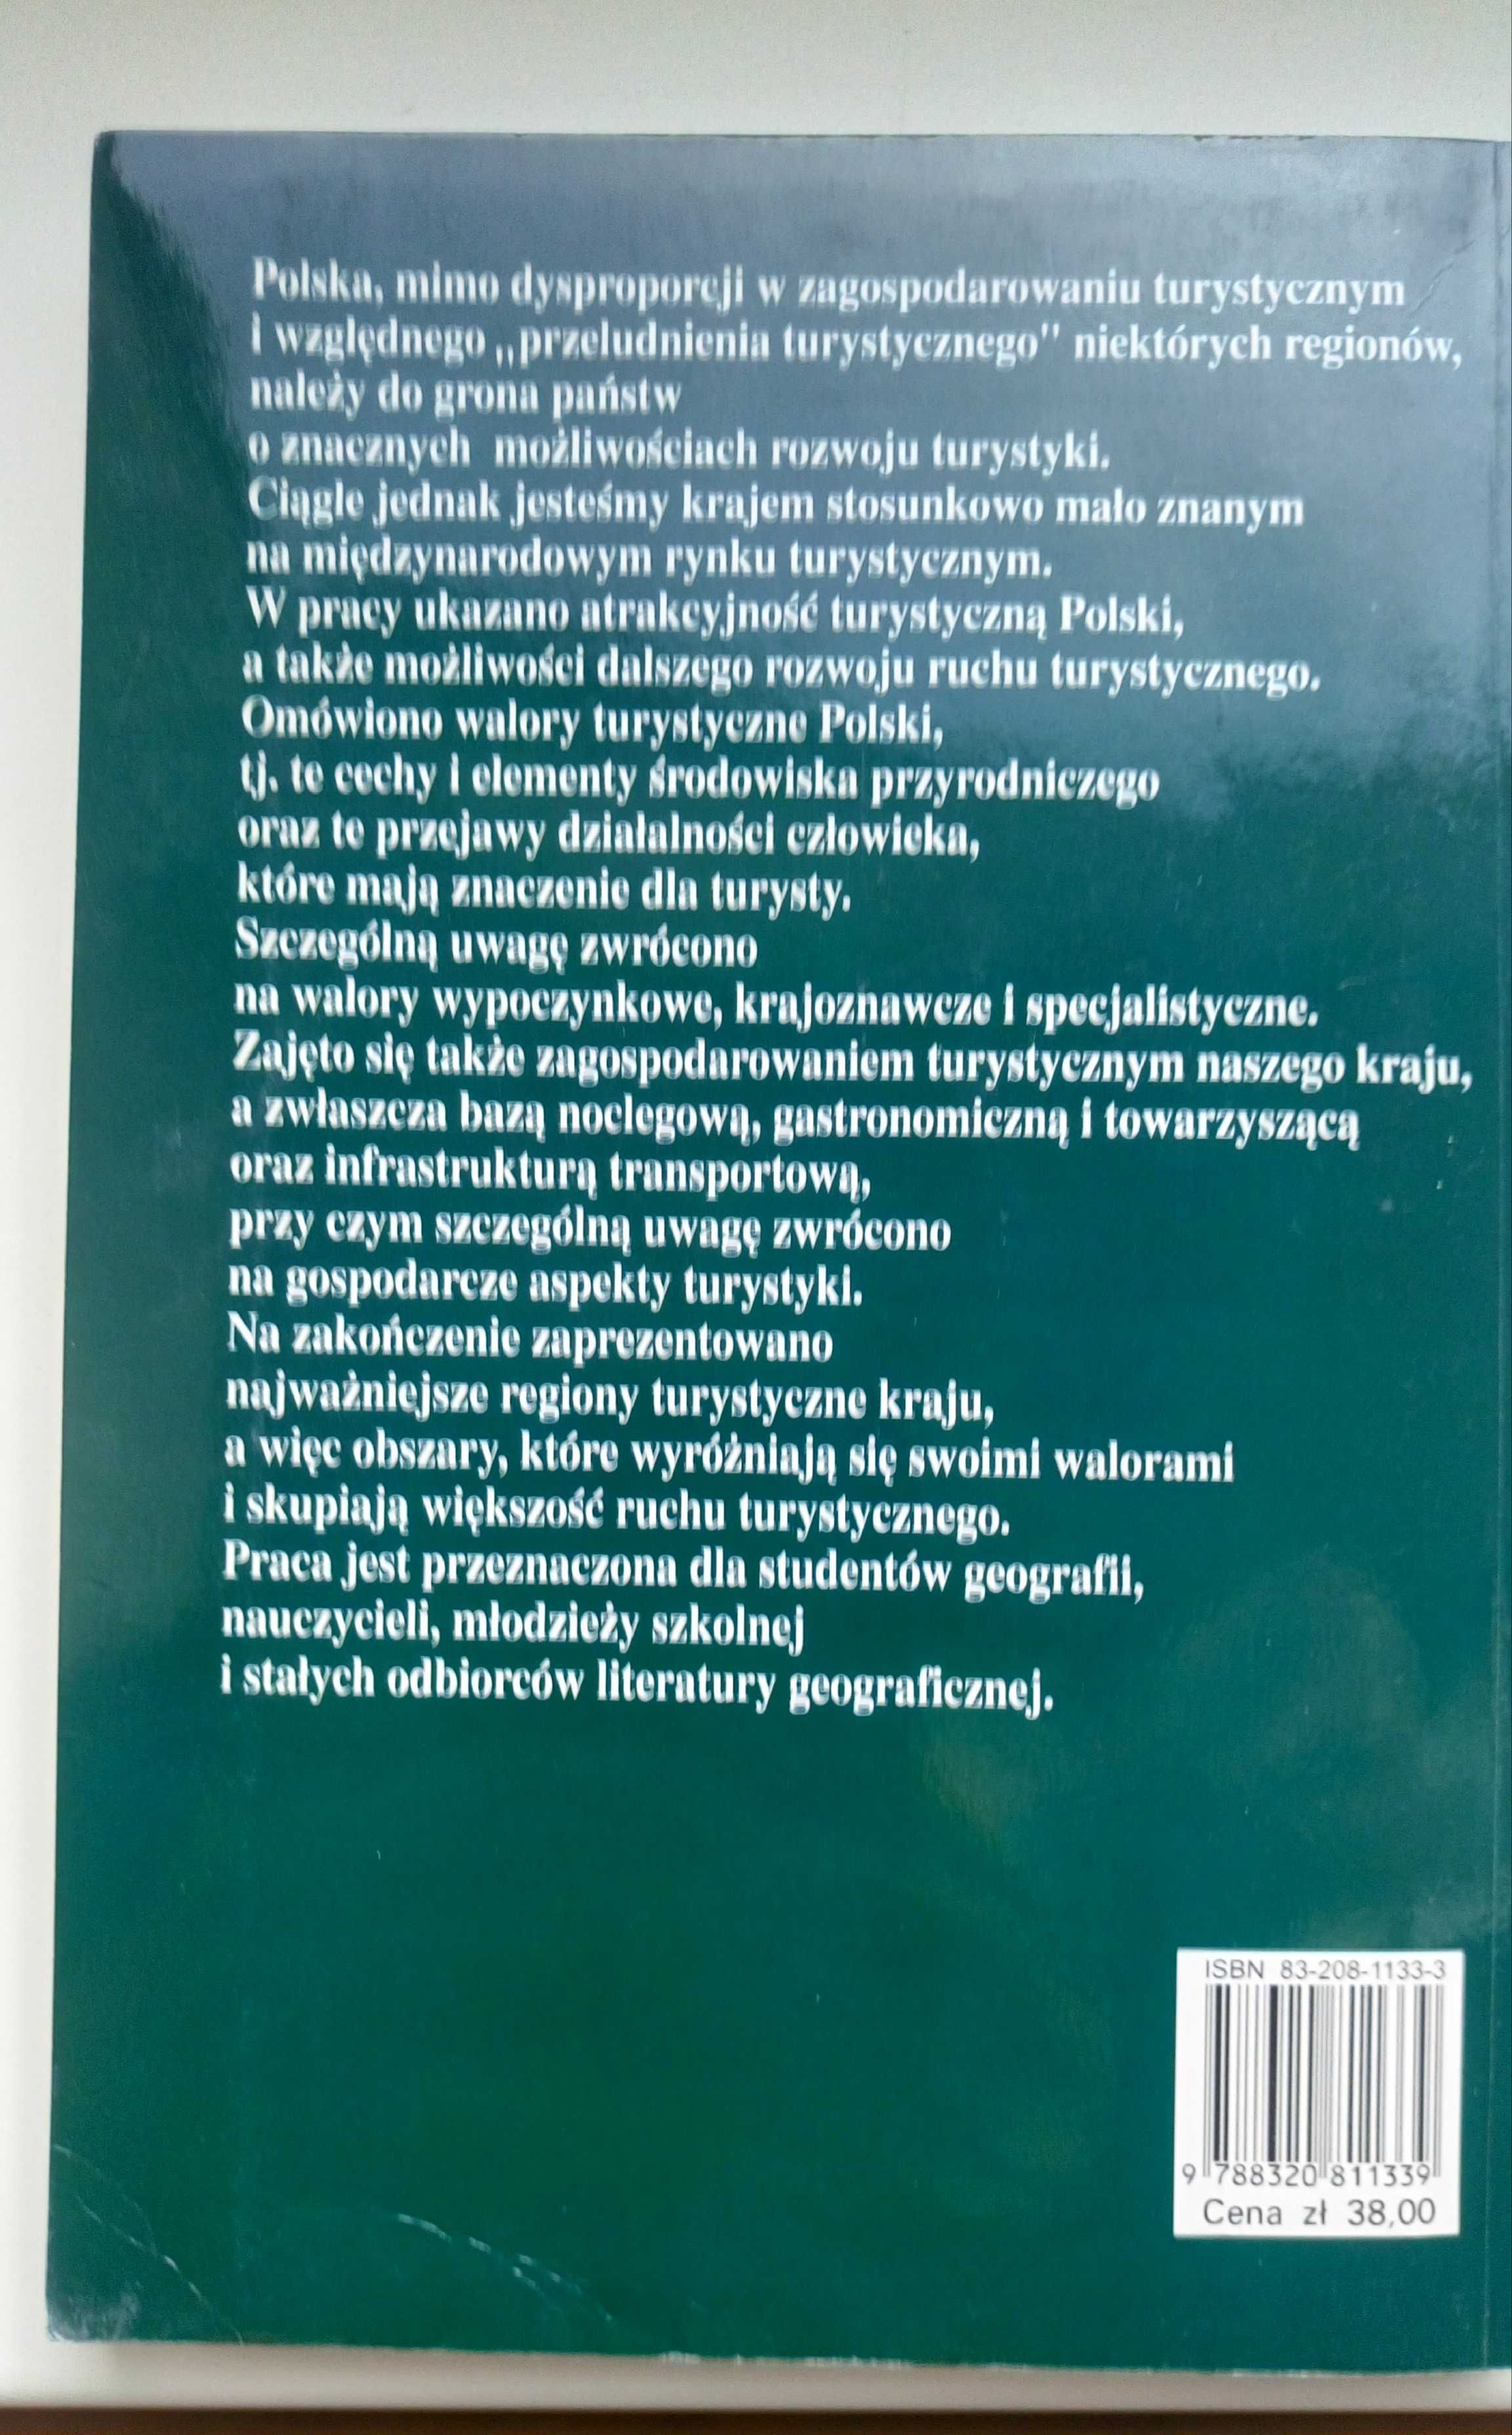 Geografia turystyki Polski, Lijewski, Mikułowski, Wyrzykowski, 1998r.